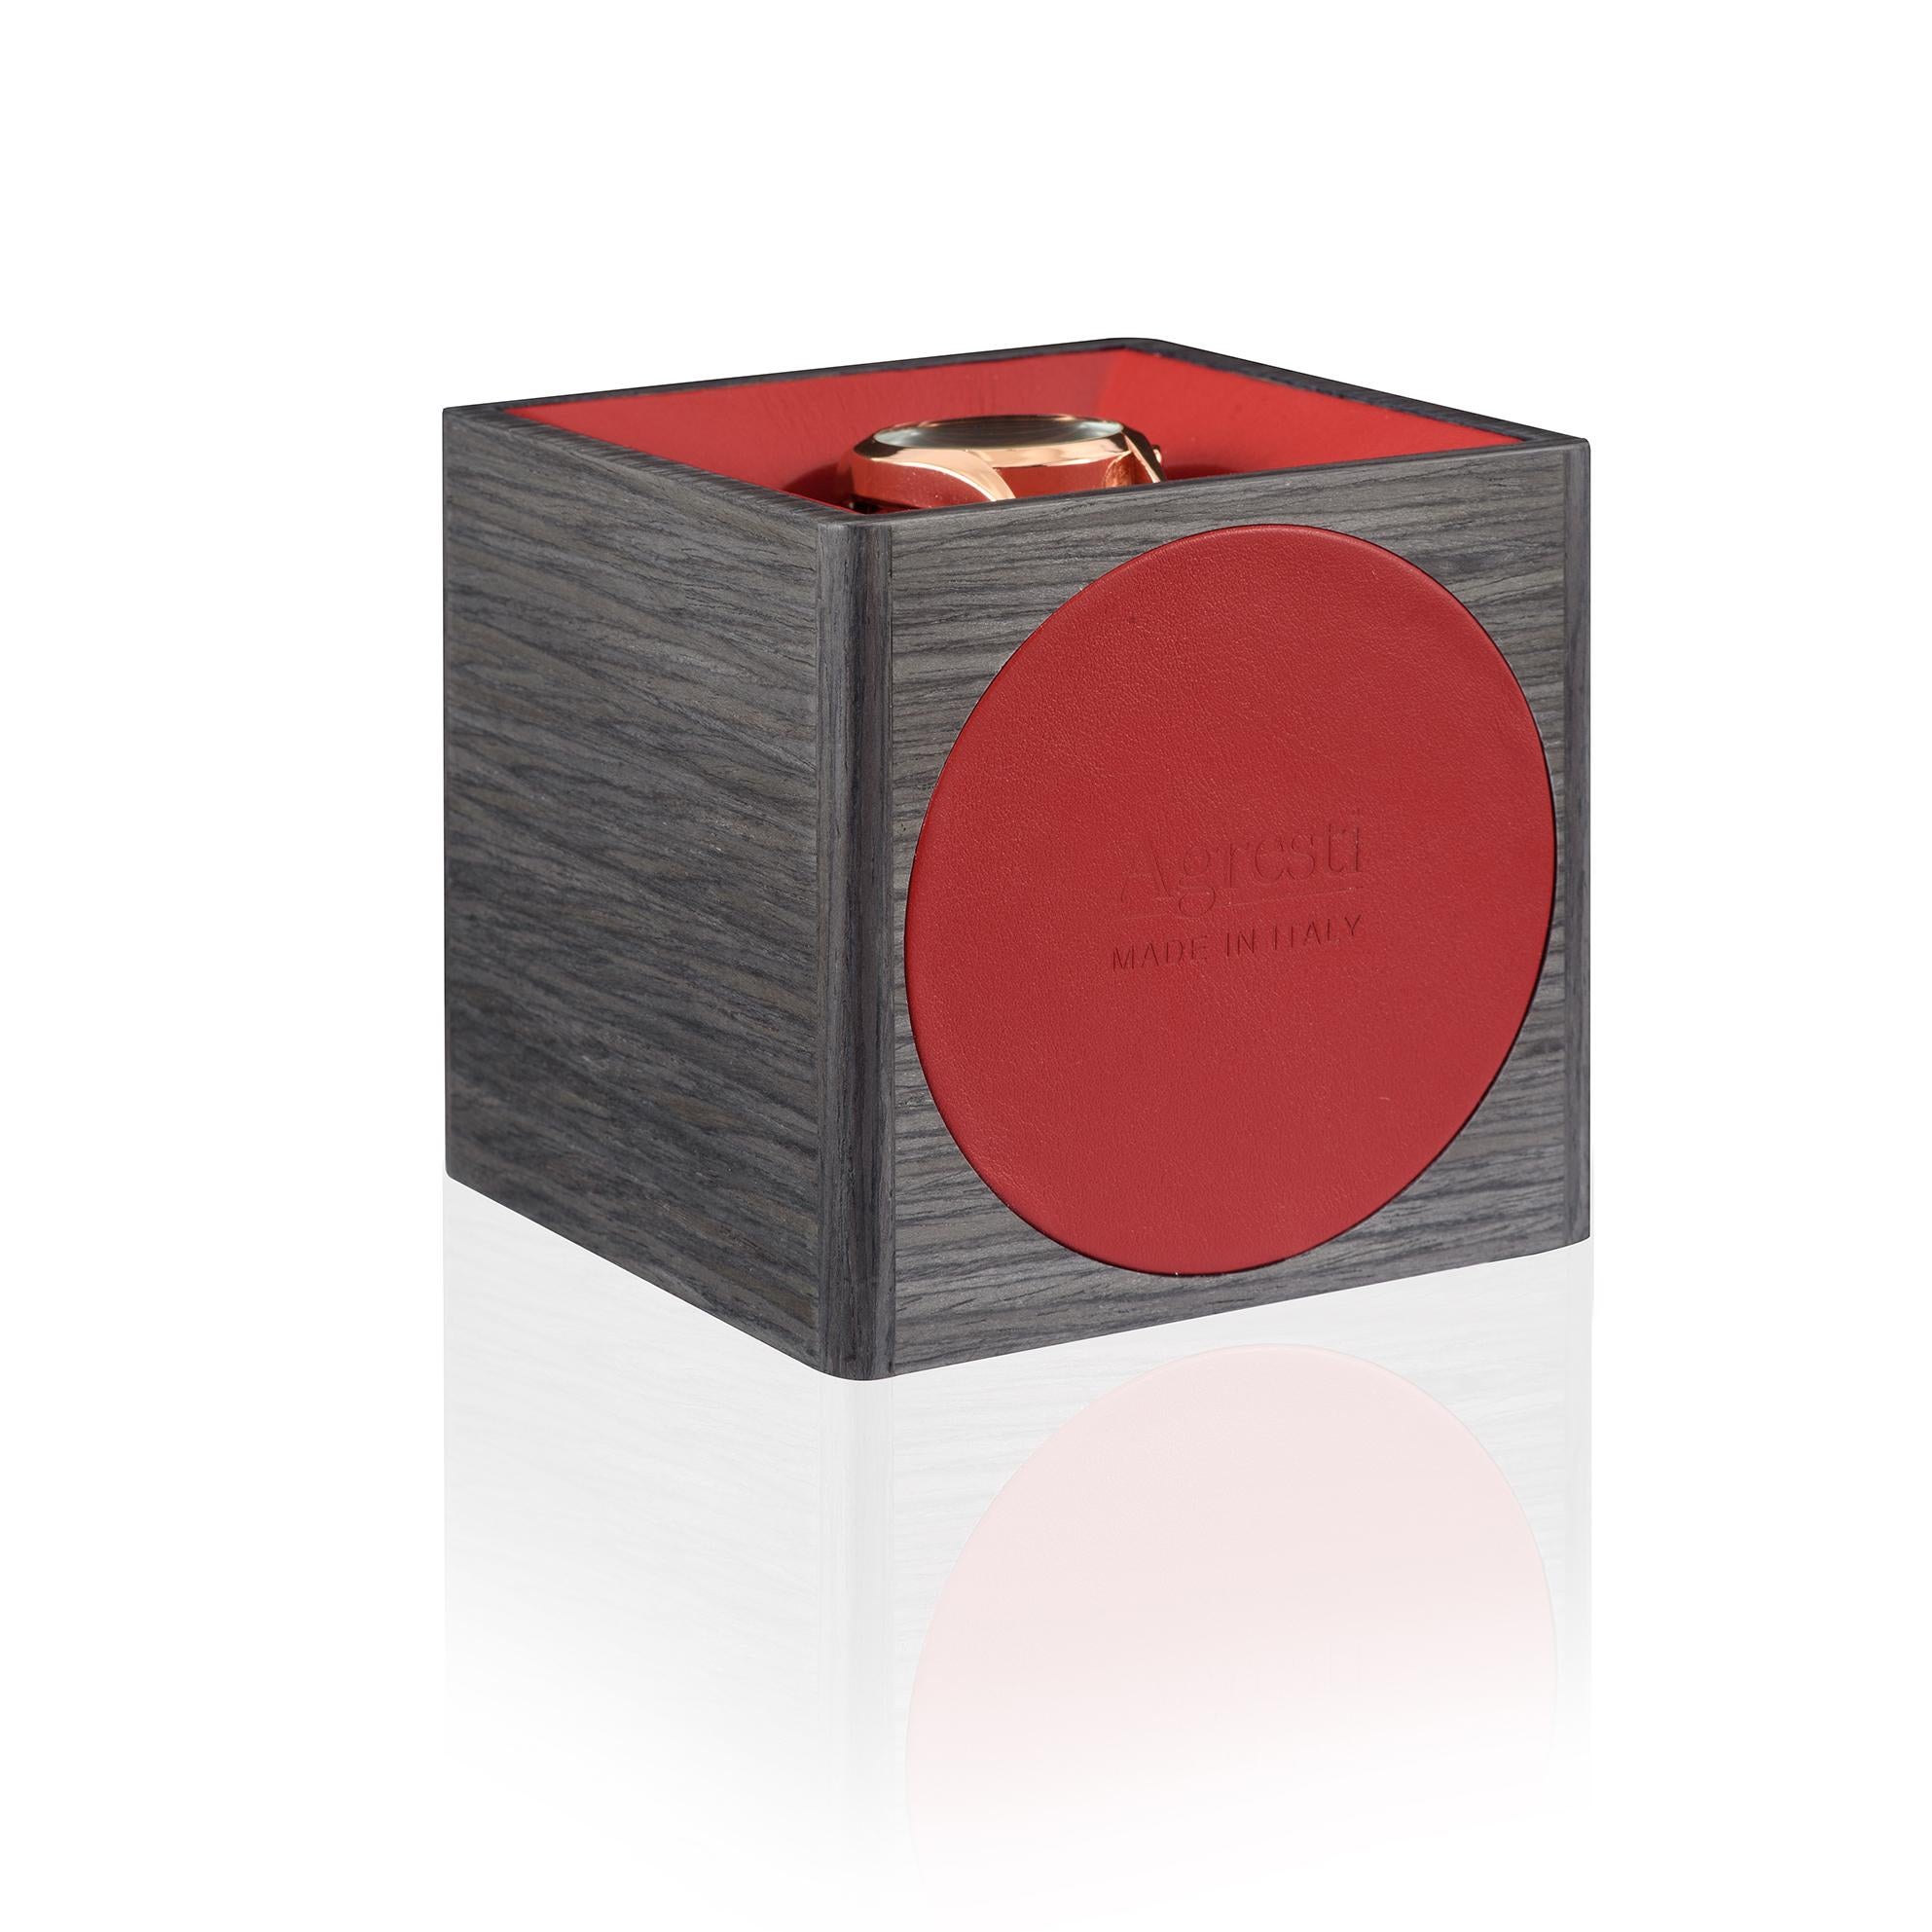 Italian Temp Unico Rosso Watch Winder in Oak Smoke Grey by Agresti For Sale